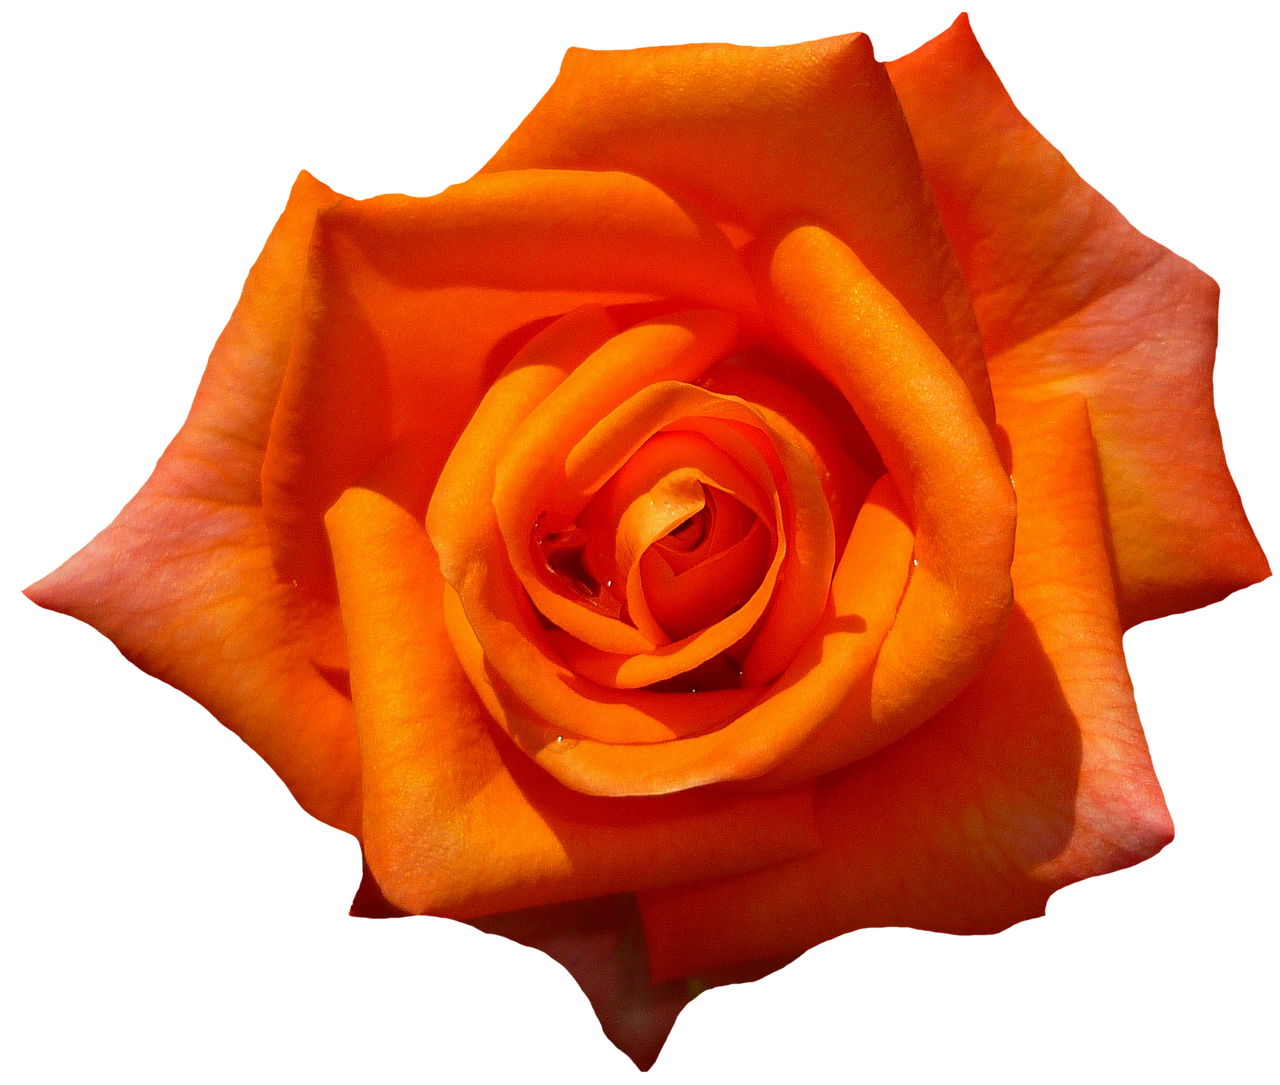 Vibrant Orange Rose Black Background PNG